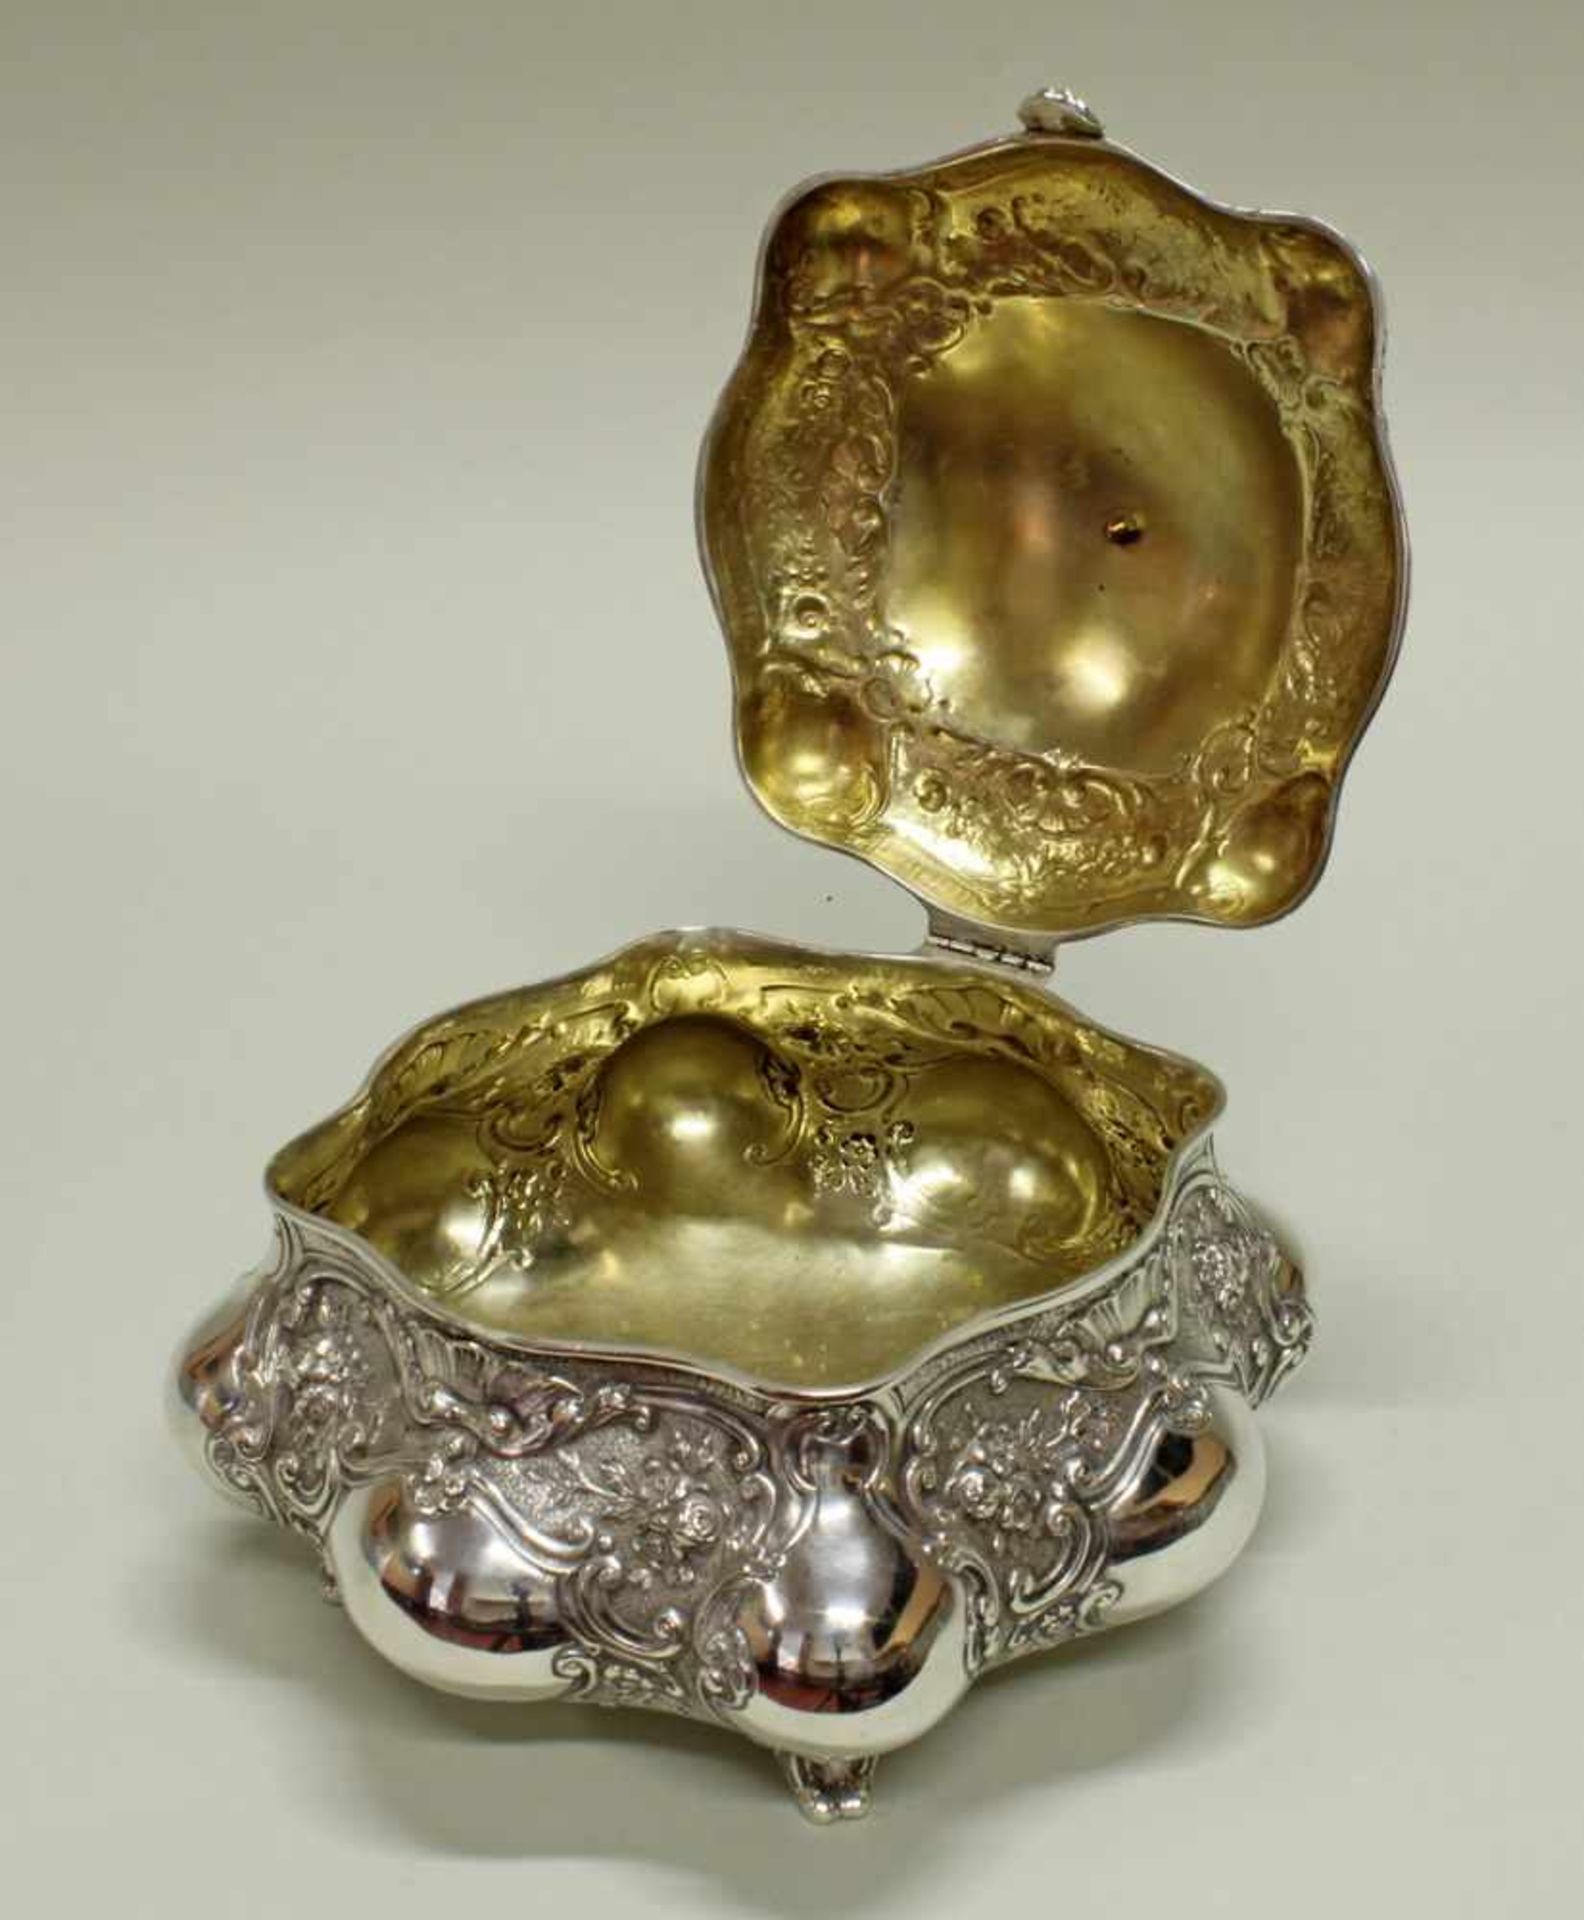 Deckeldose, Silber 800, deutsch, Rokokoform, innen vergoldet, 15 x 20 x 20 cm, ca. 920 g- - -25.00 % - Image 4 of 4